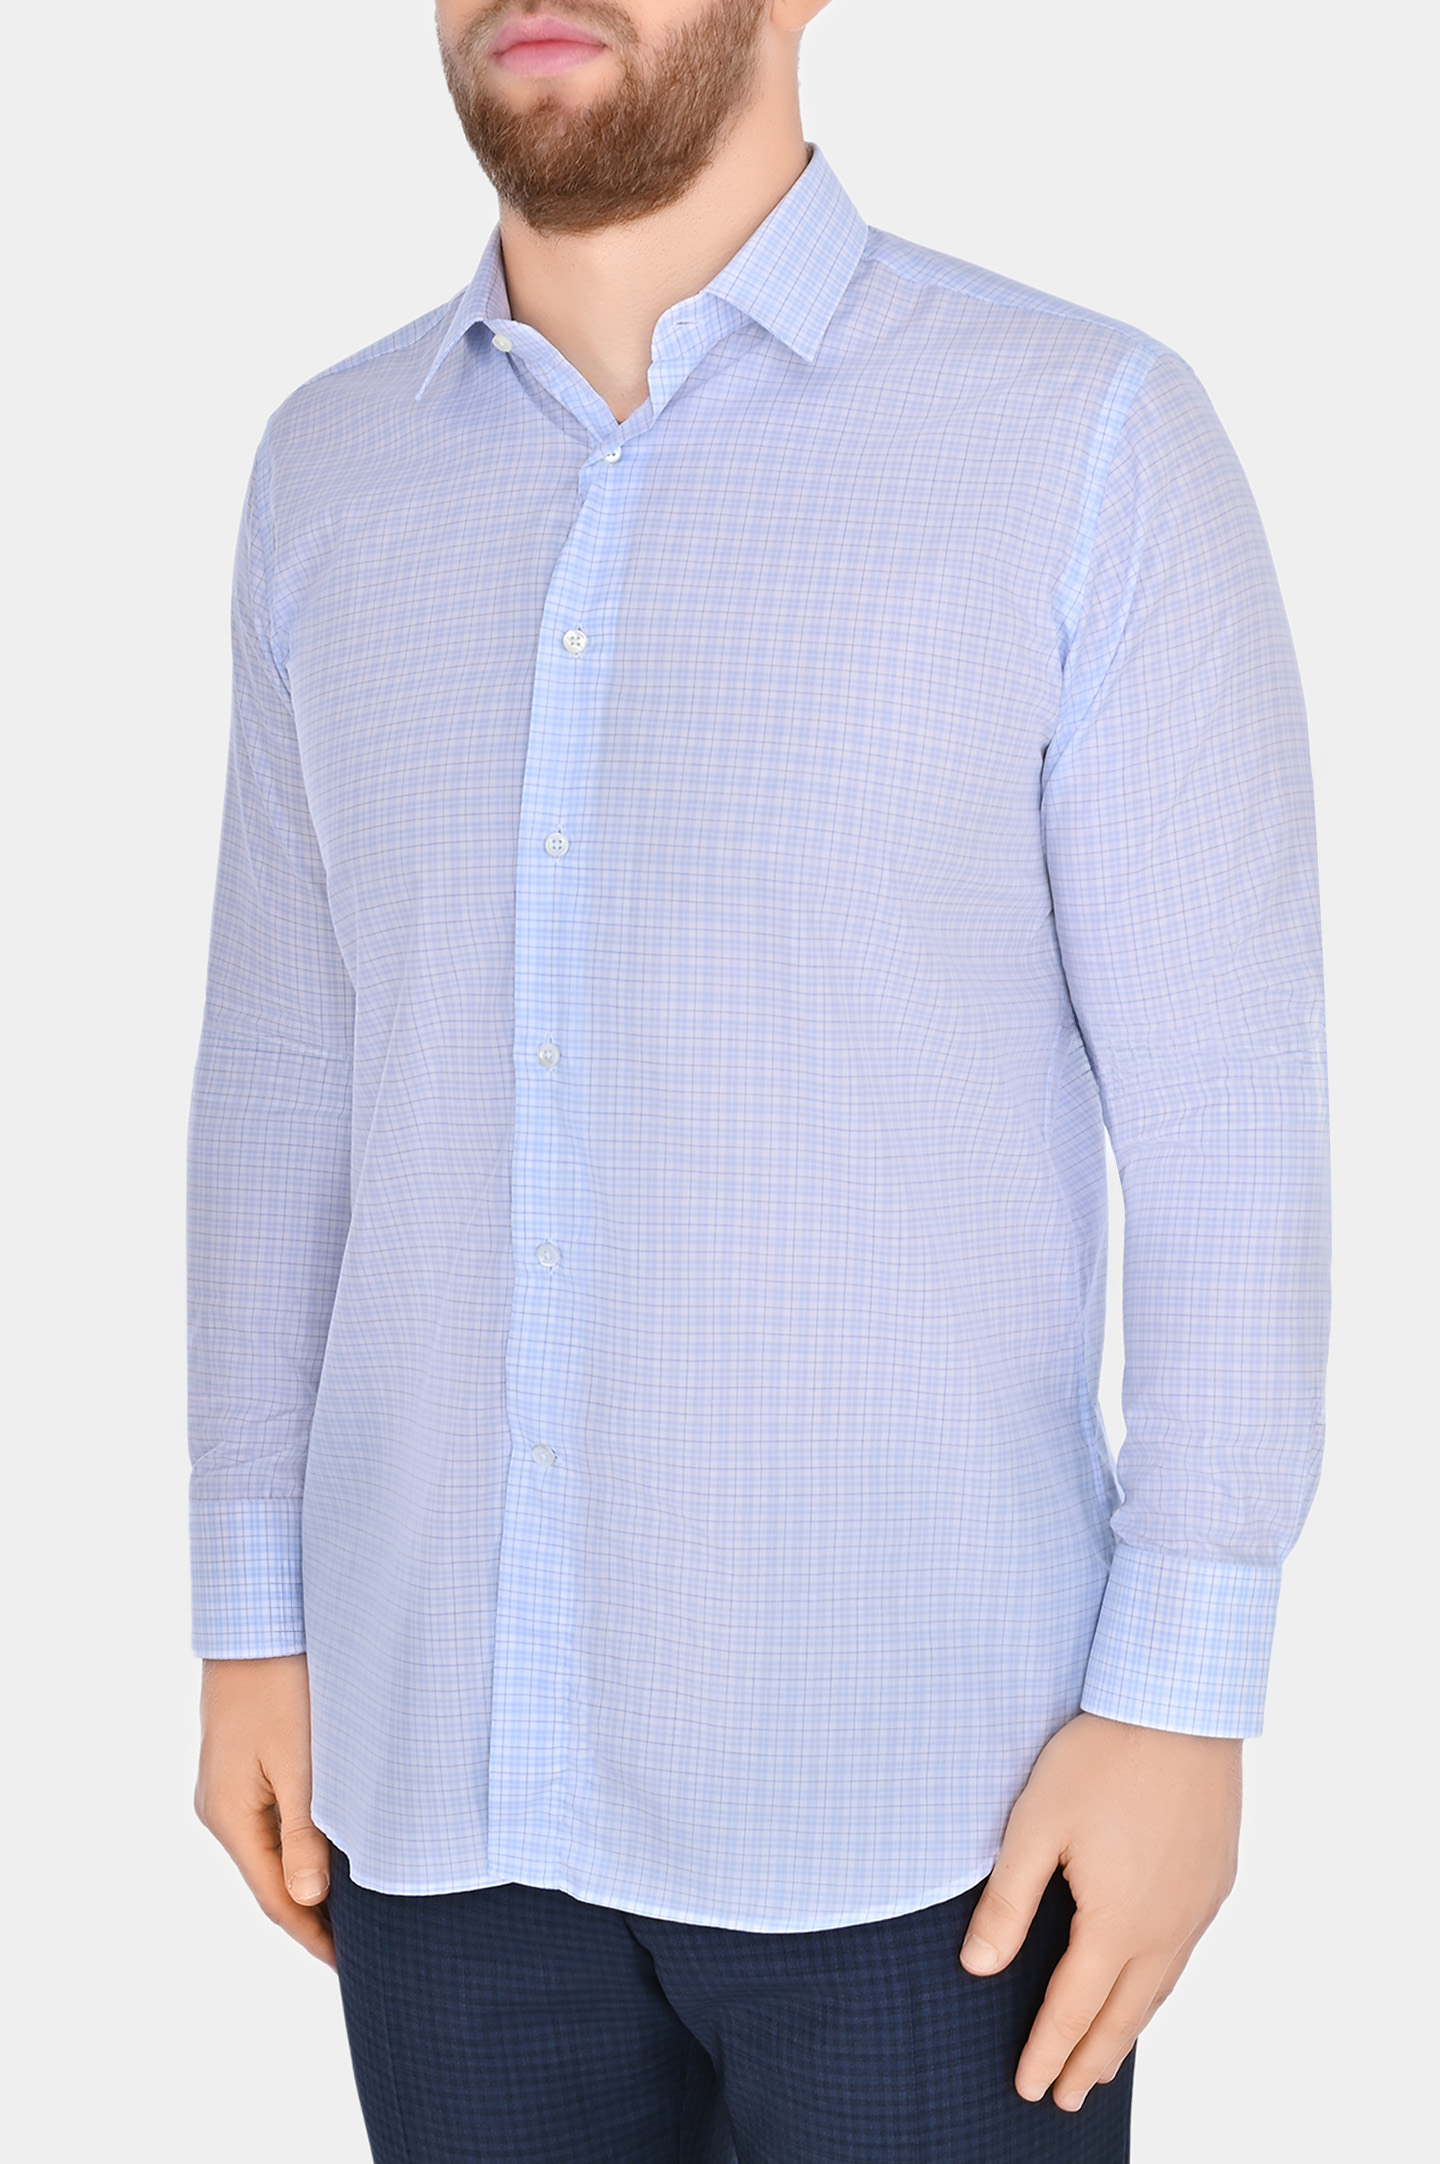 Хлопковая рубашка с принтом клетка CANALI GD03154 7A1, цвет: Белый, Мужской